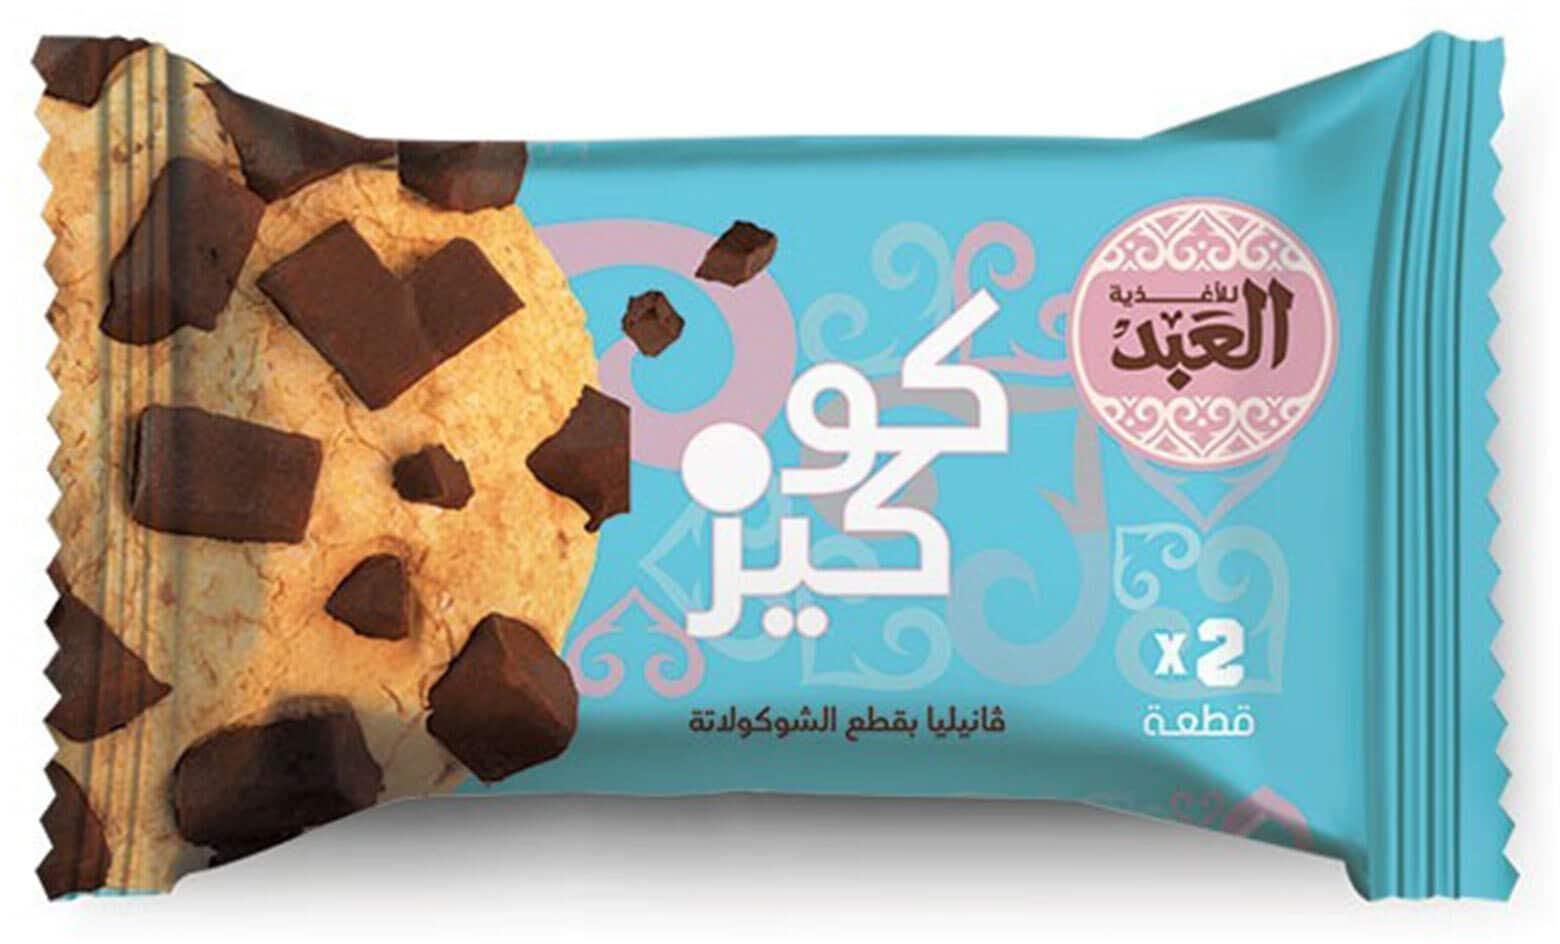 El Abd Vanilla Cookies with Chocolate Chips - 2 Cookies